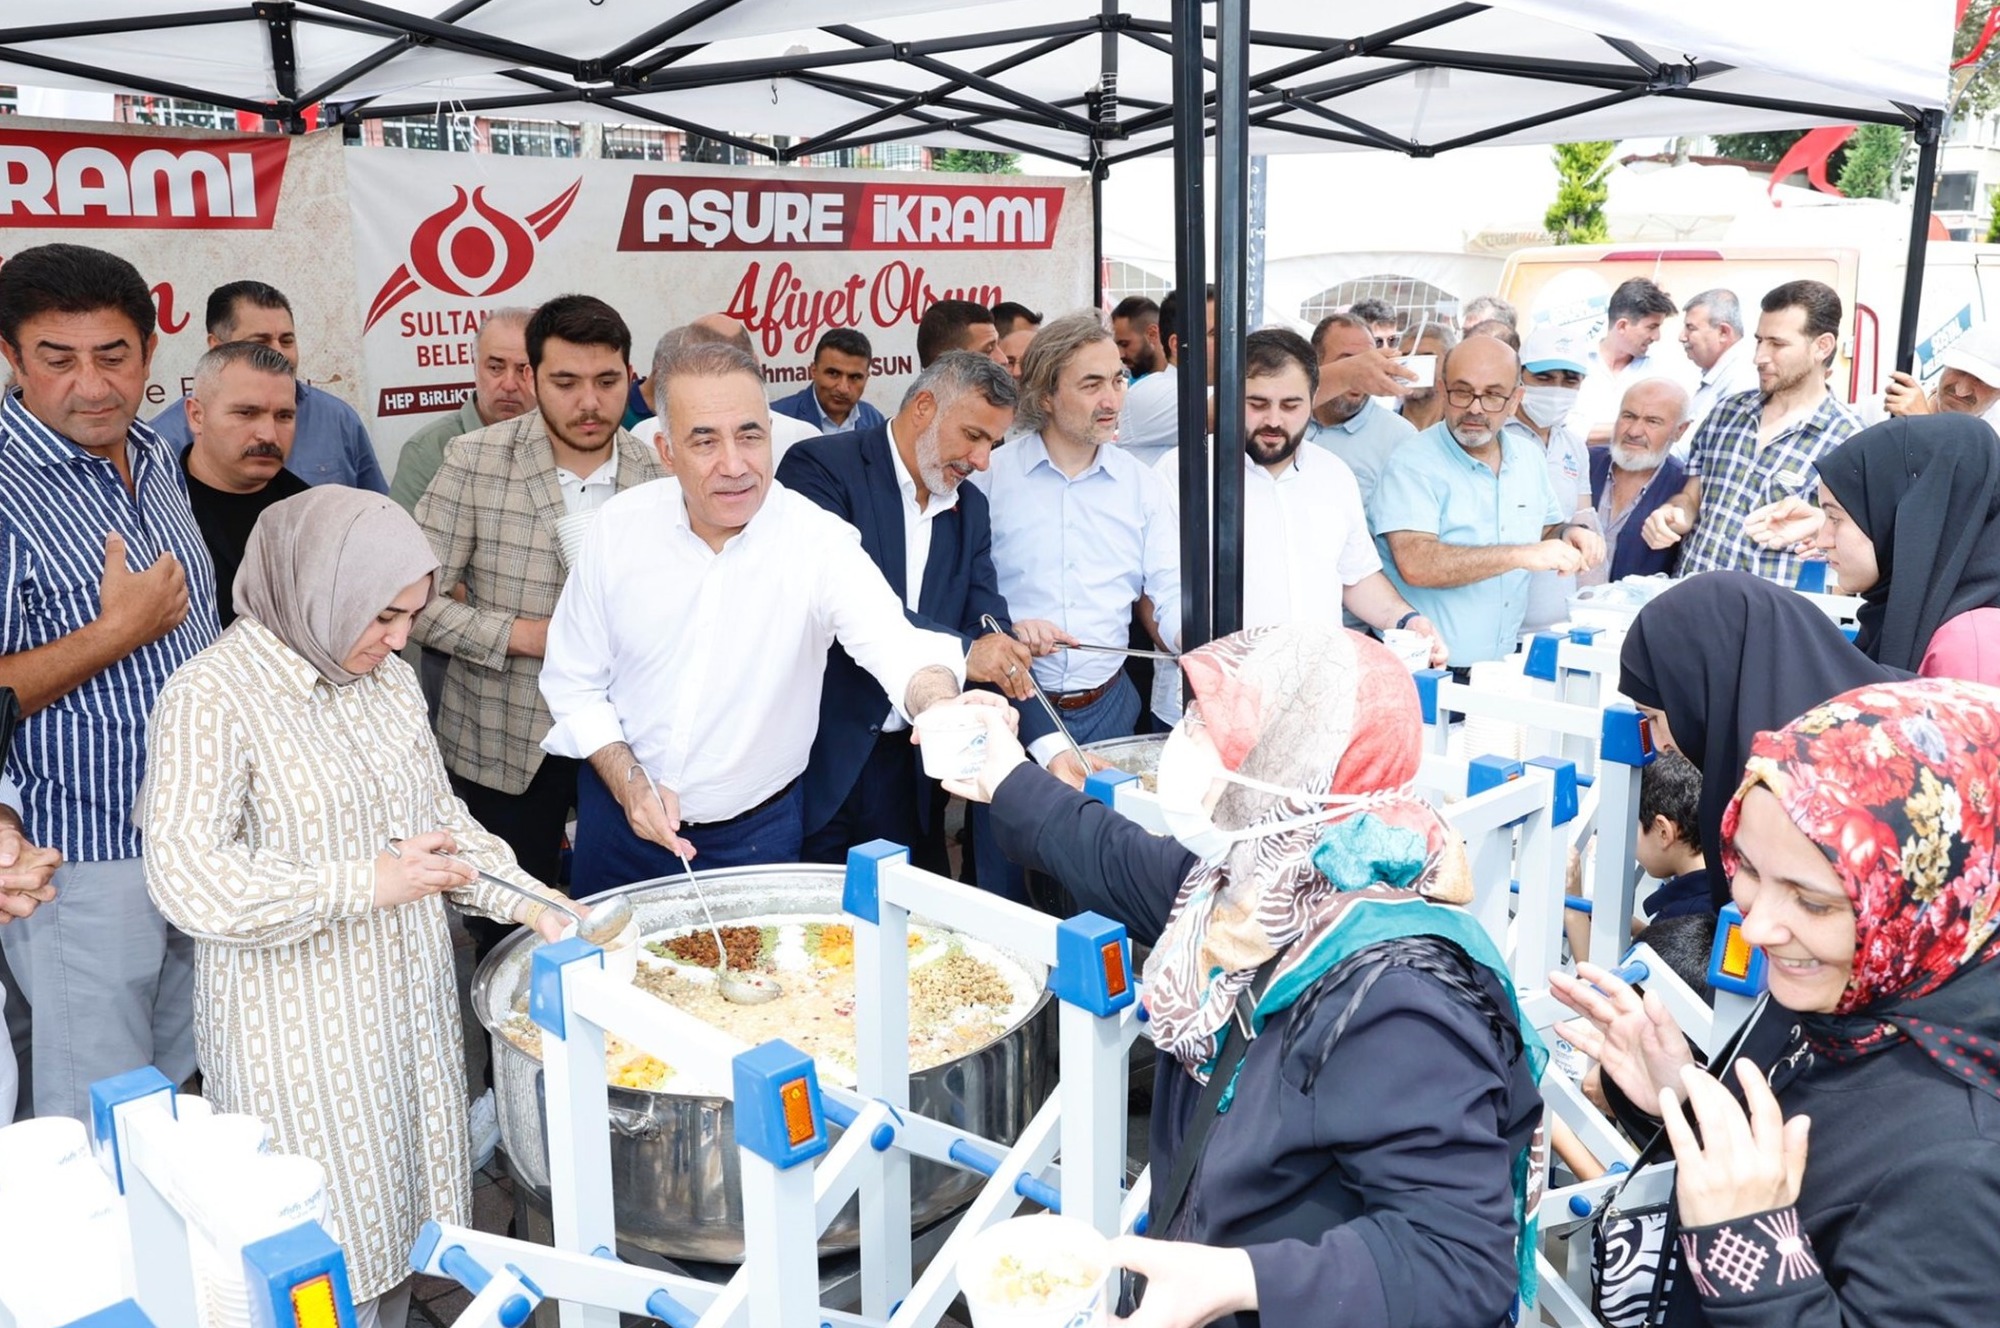 Sultangazi Belediye Başkanı Dursun Aşurenin Bereketini ve Muhabbetini Vatandaşlarla Paylaştı